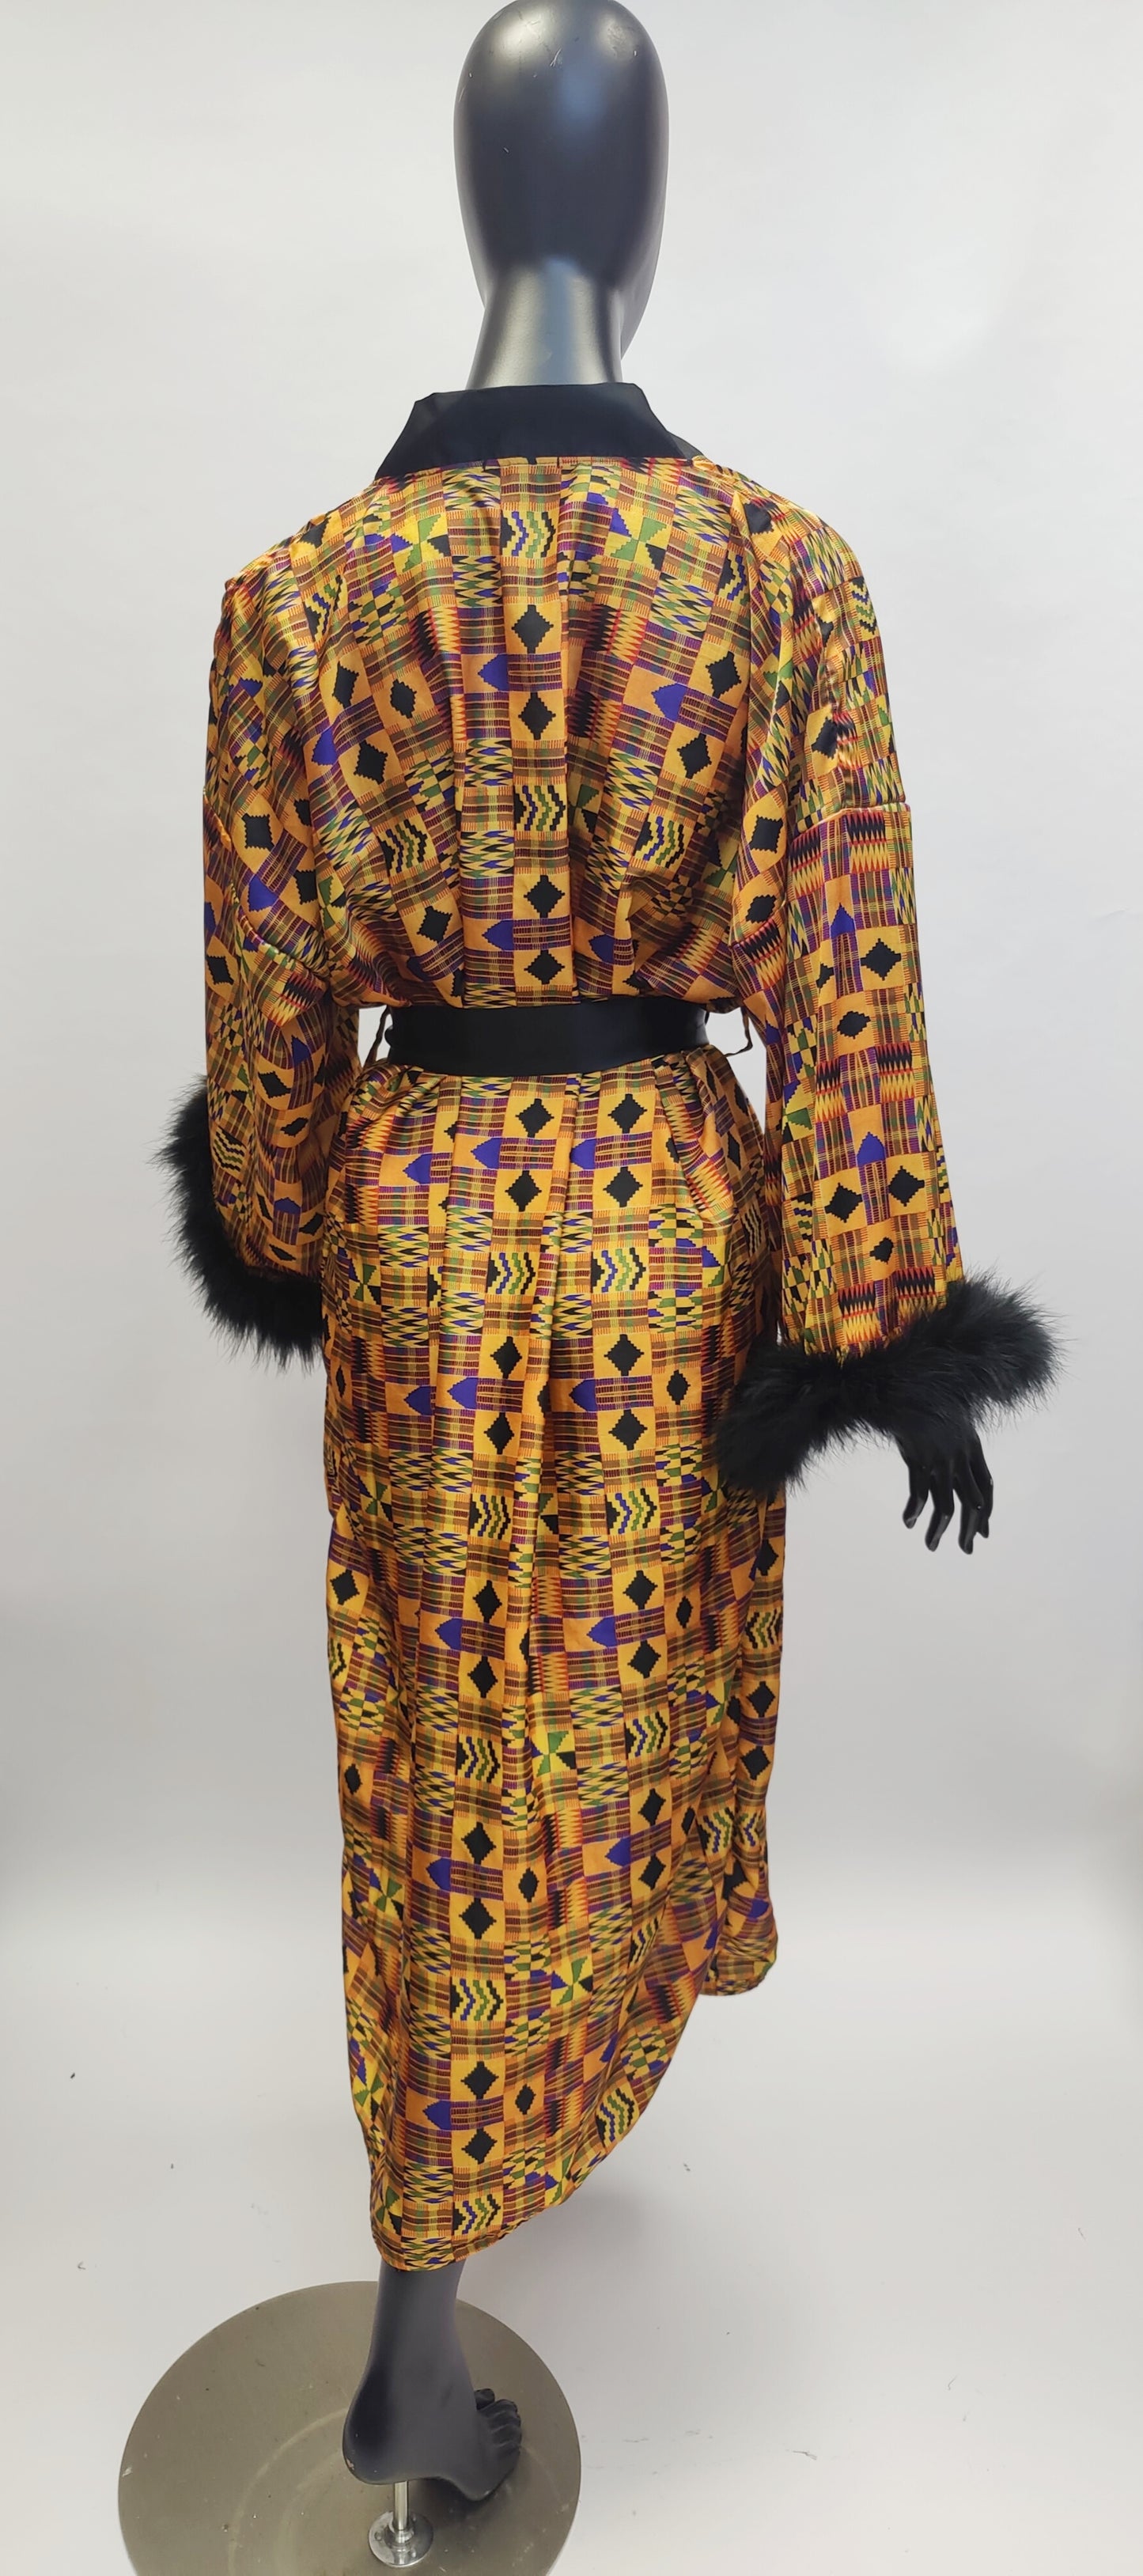 Nefertiti Kente Print Satin Dressing Gown Kimono Robe with Feather Trim Cuffs